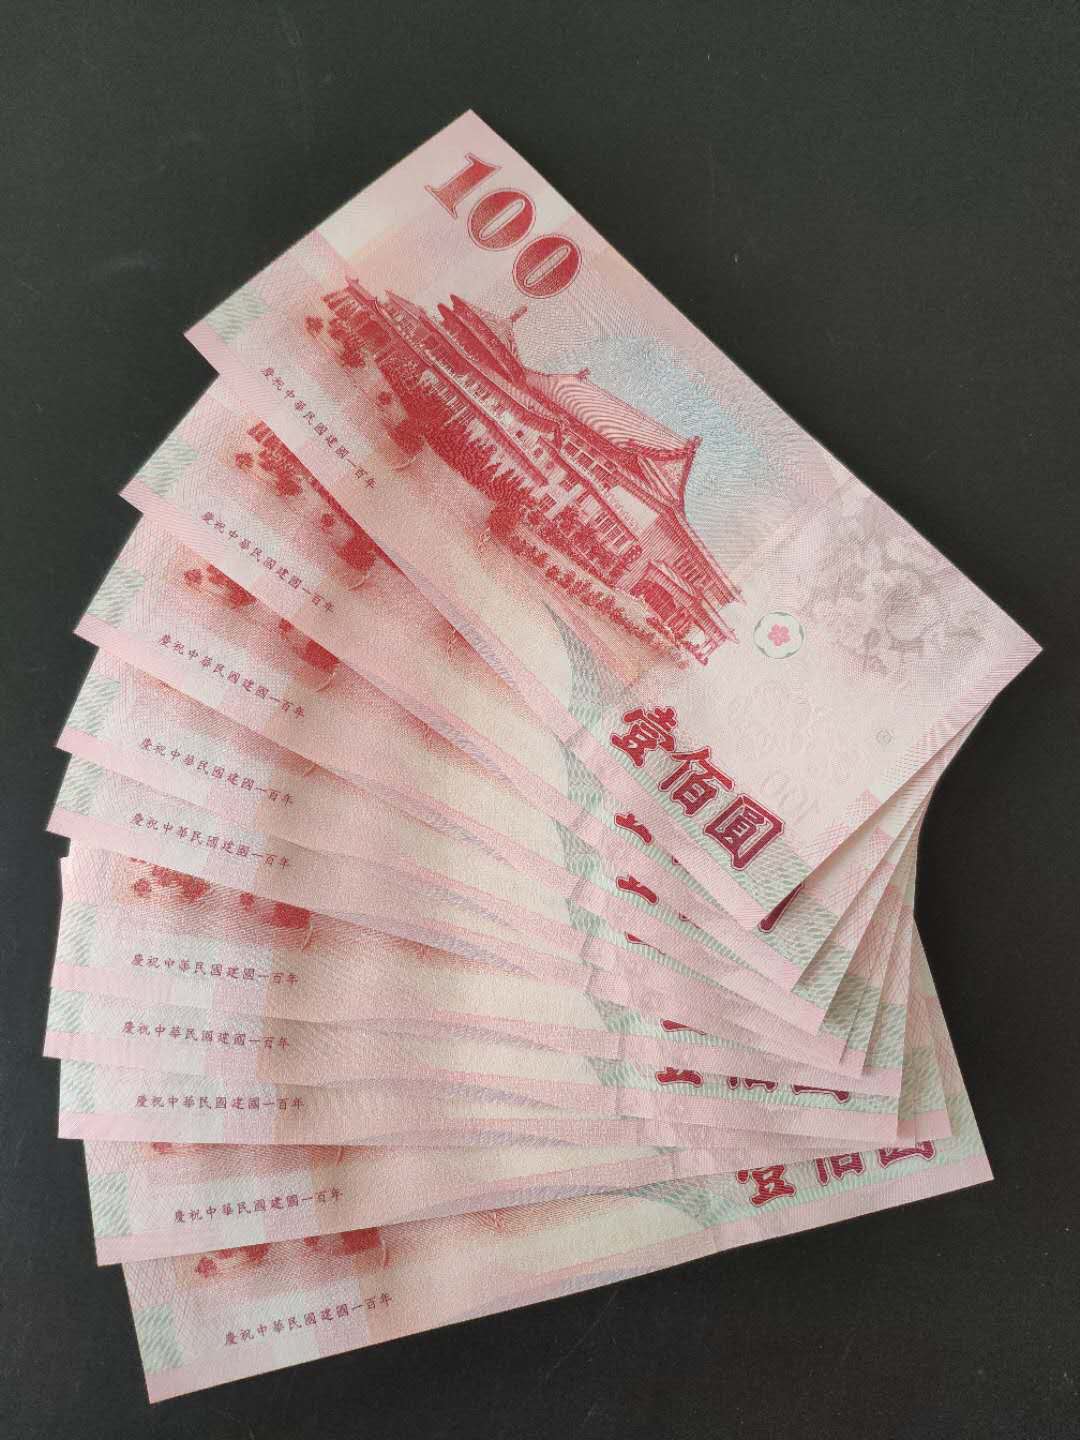 台币人民币图片